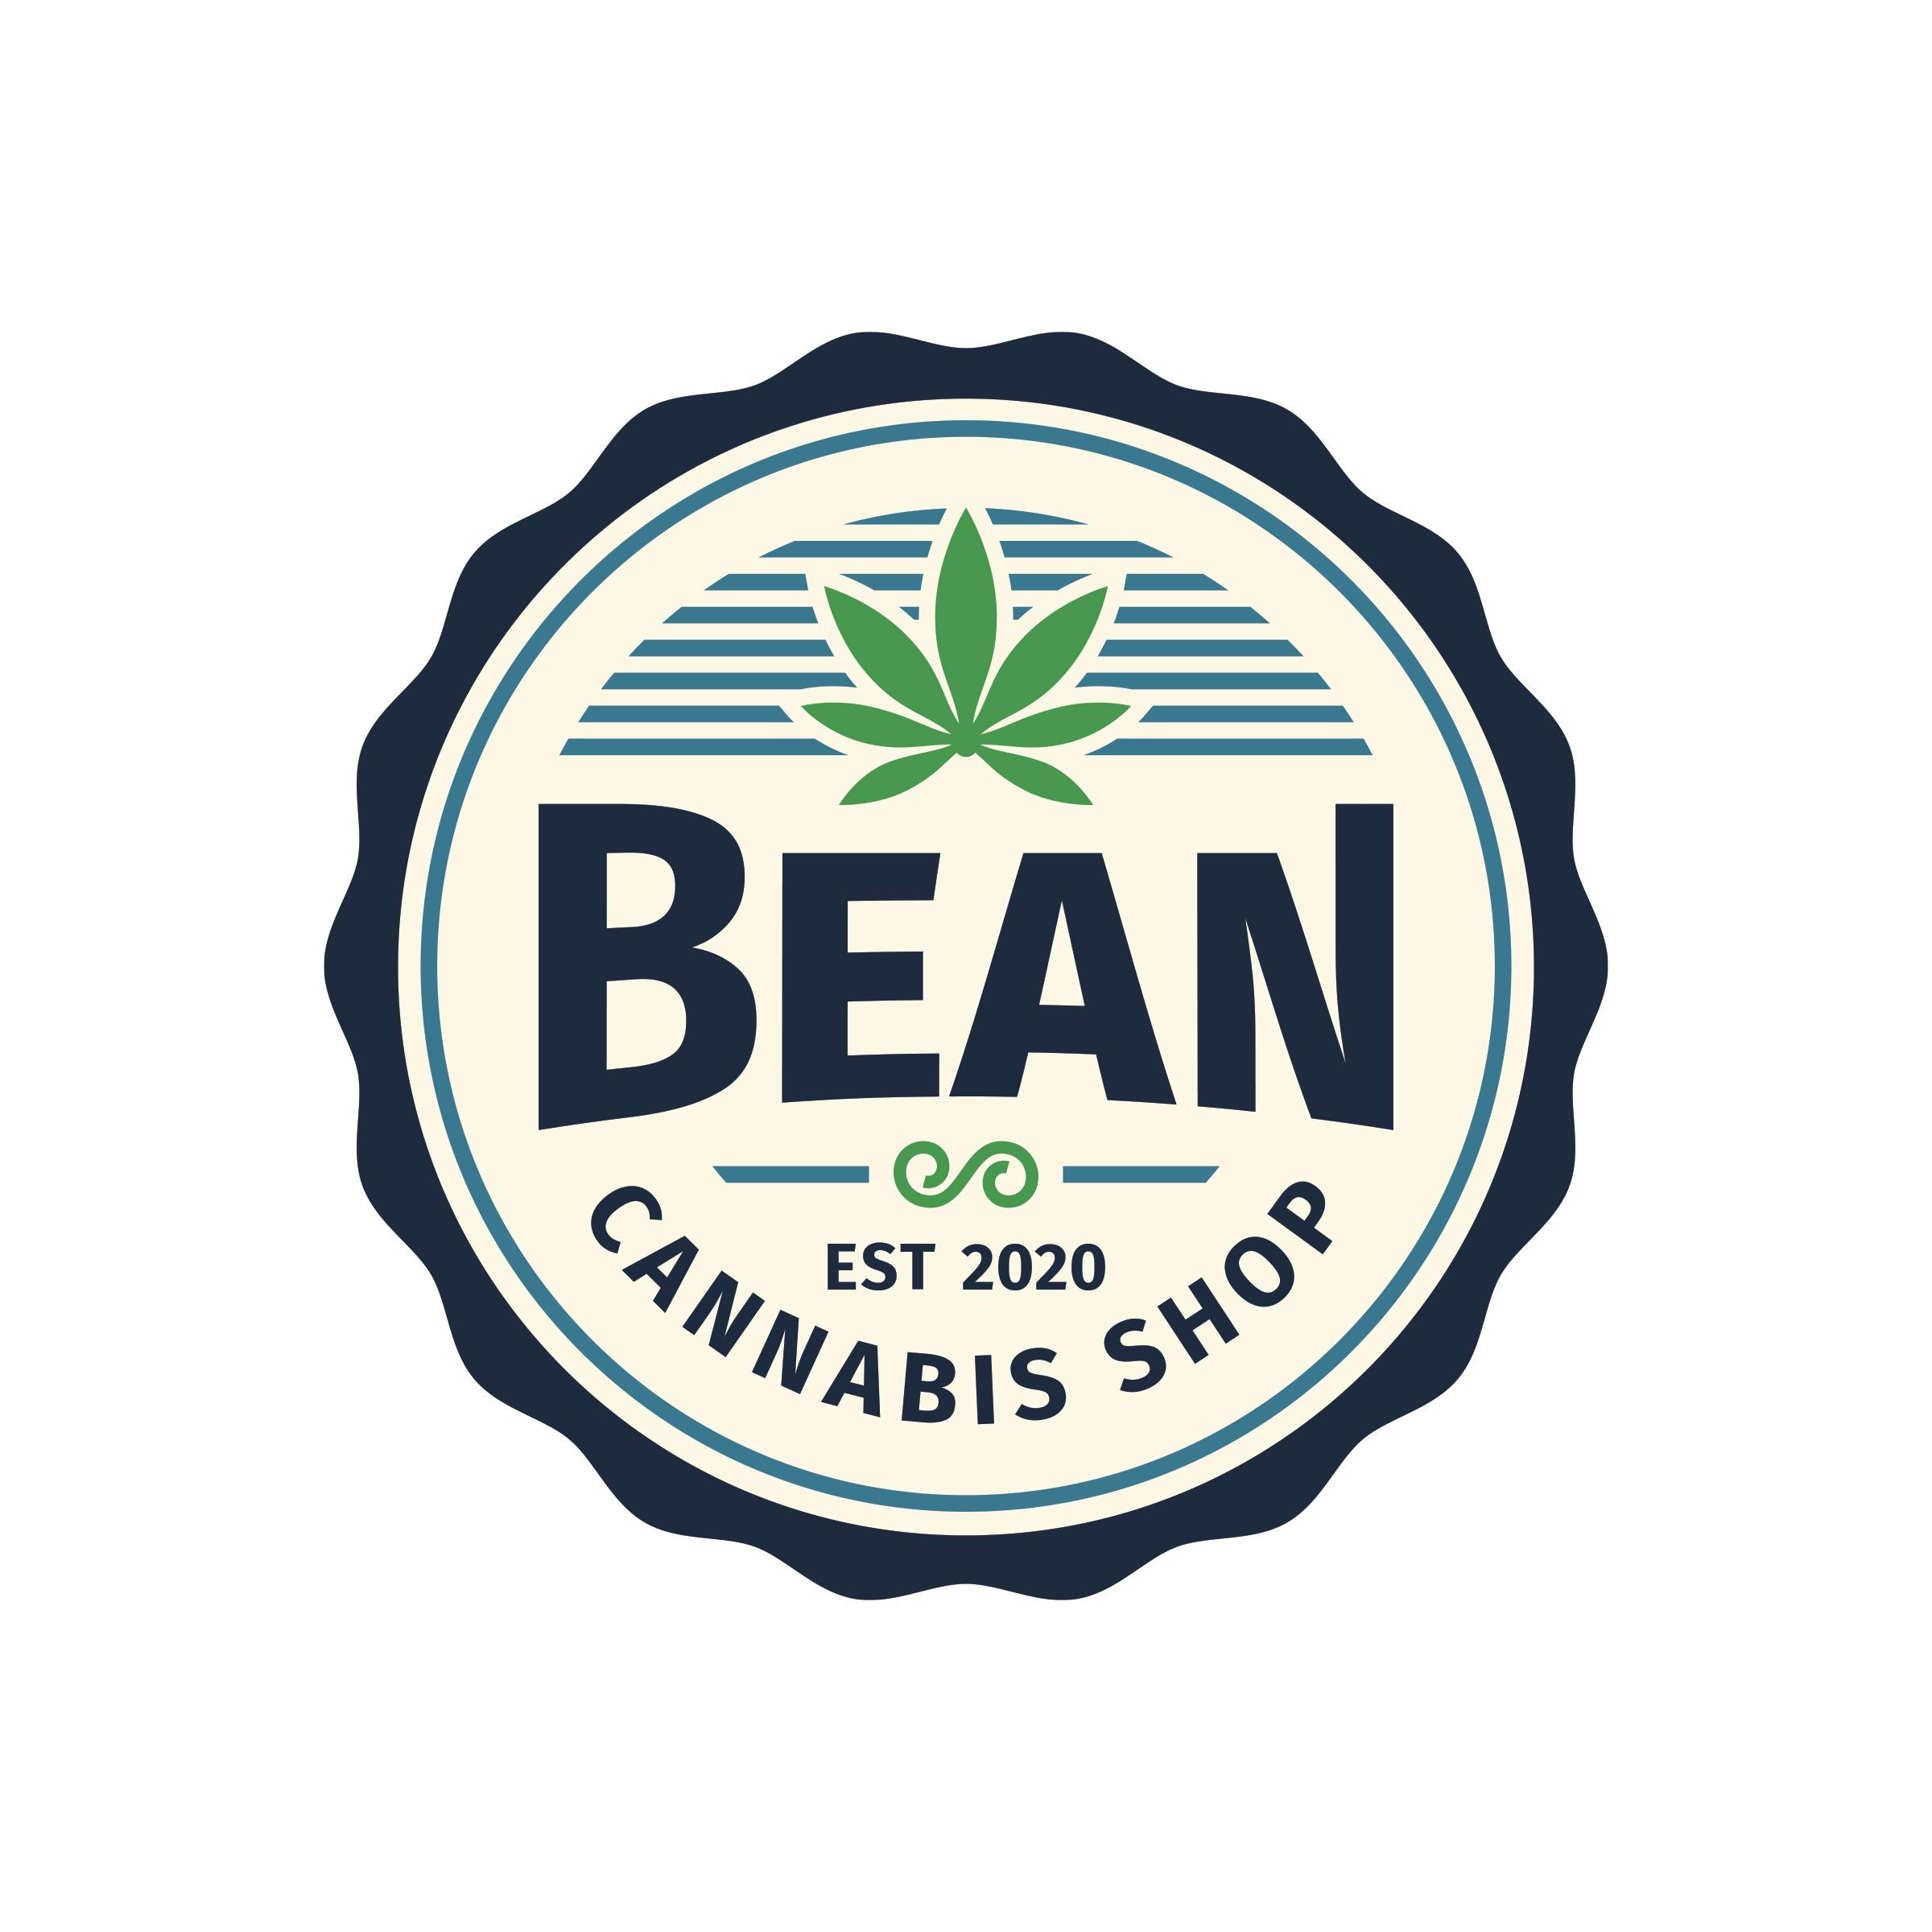 Bean Cannabis Shop - Port Alberni logo